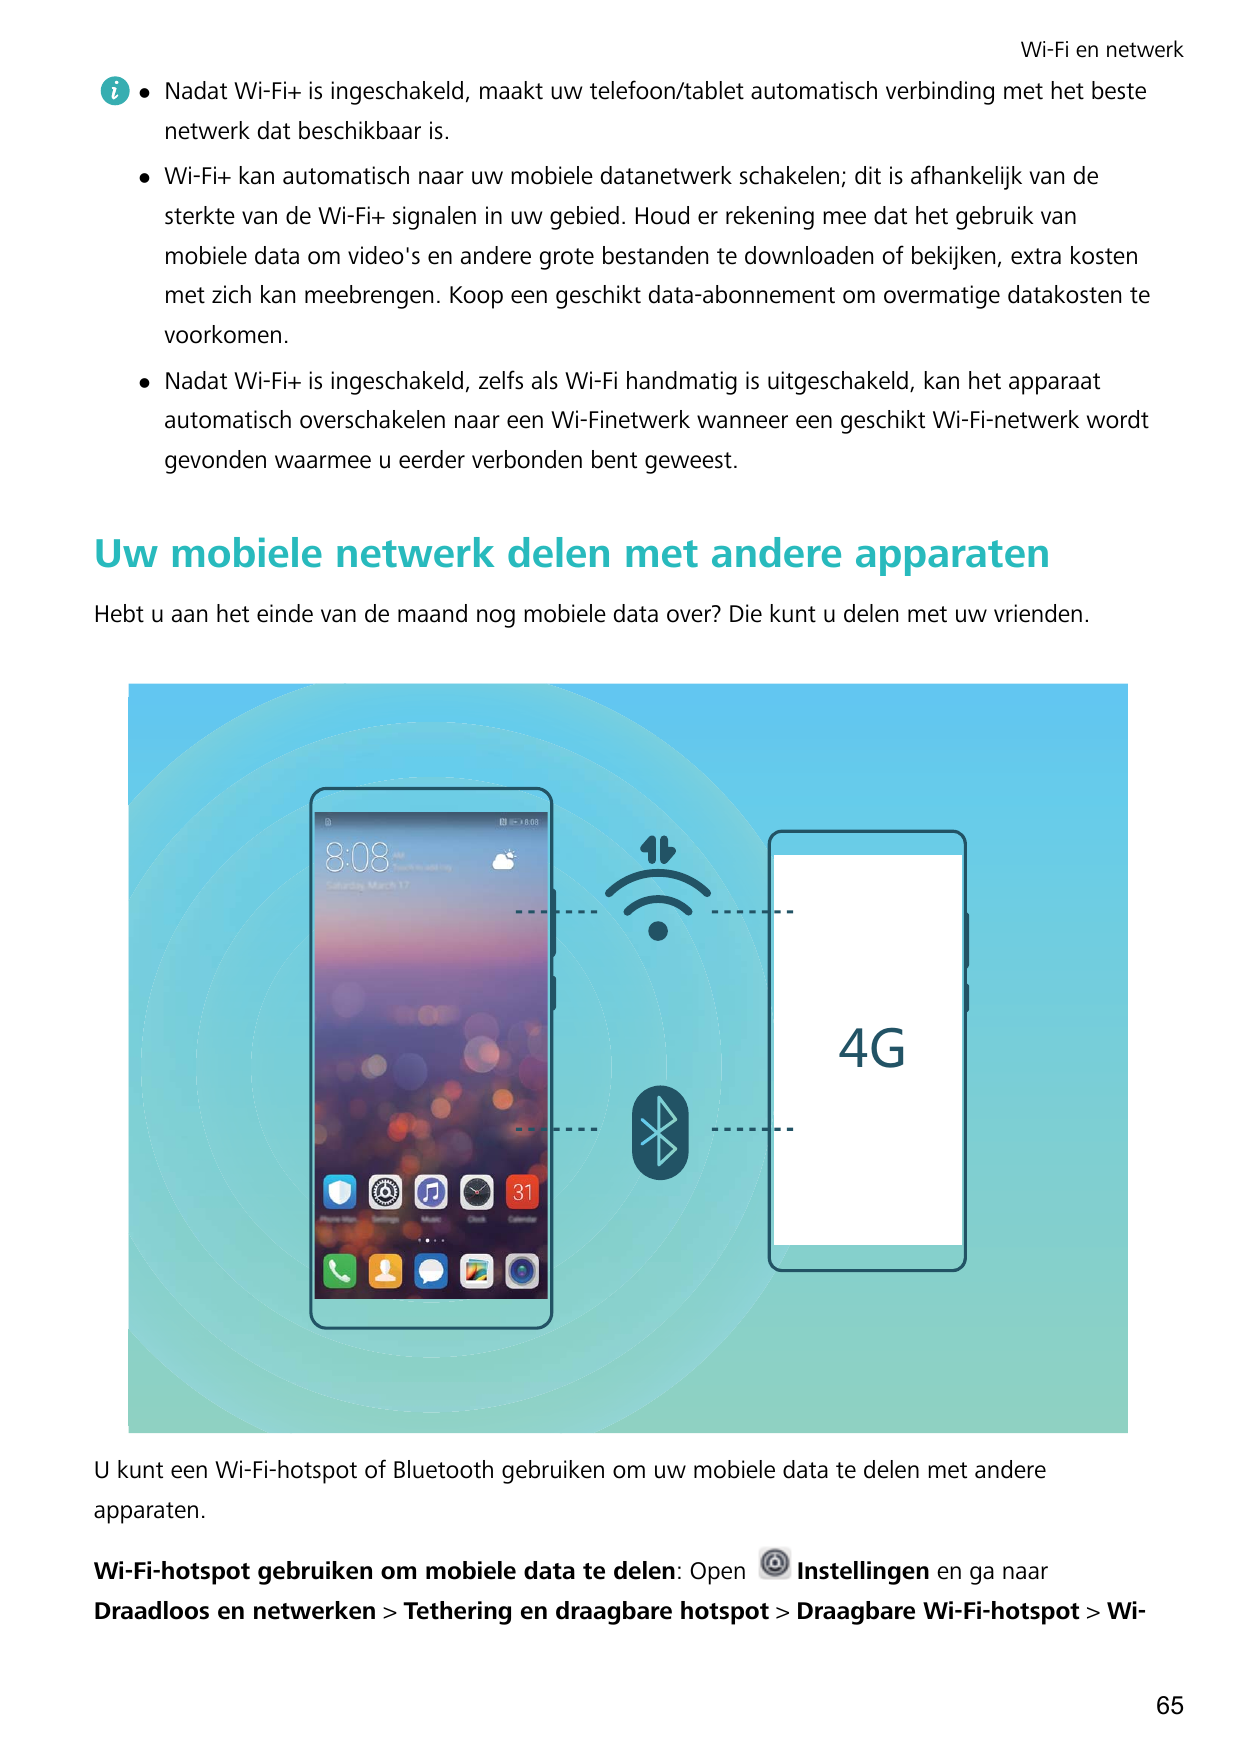 Wi-Fi en netwerklNadat Wi-Fi+ is ingeschakeld, maakt uw telefoon/tablet automatisch verbinding met het bestenetwerk dat beschikb